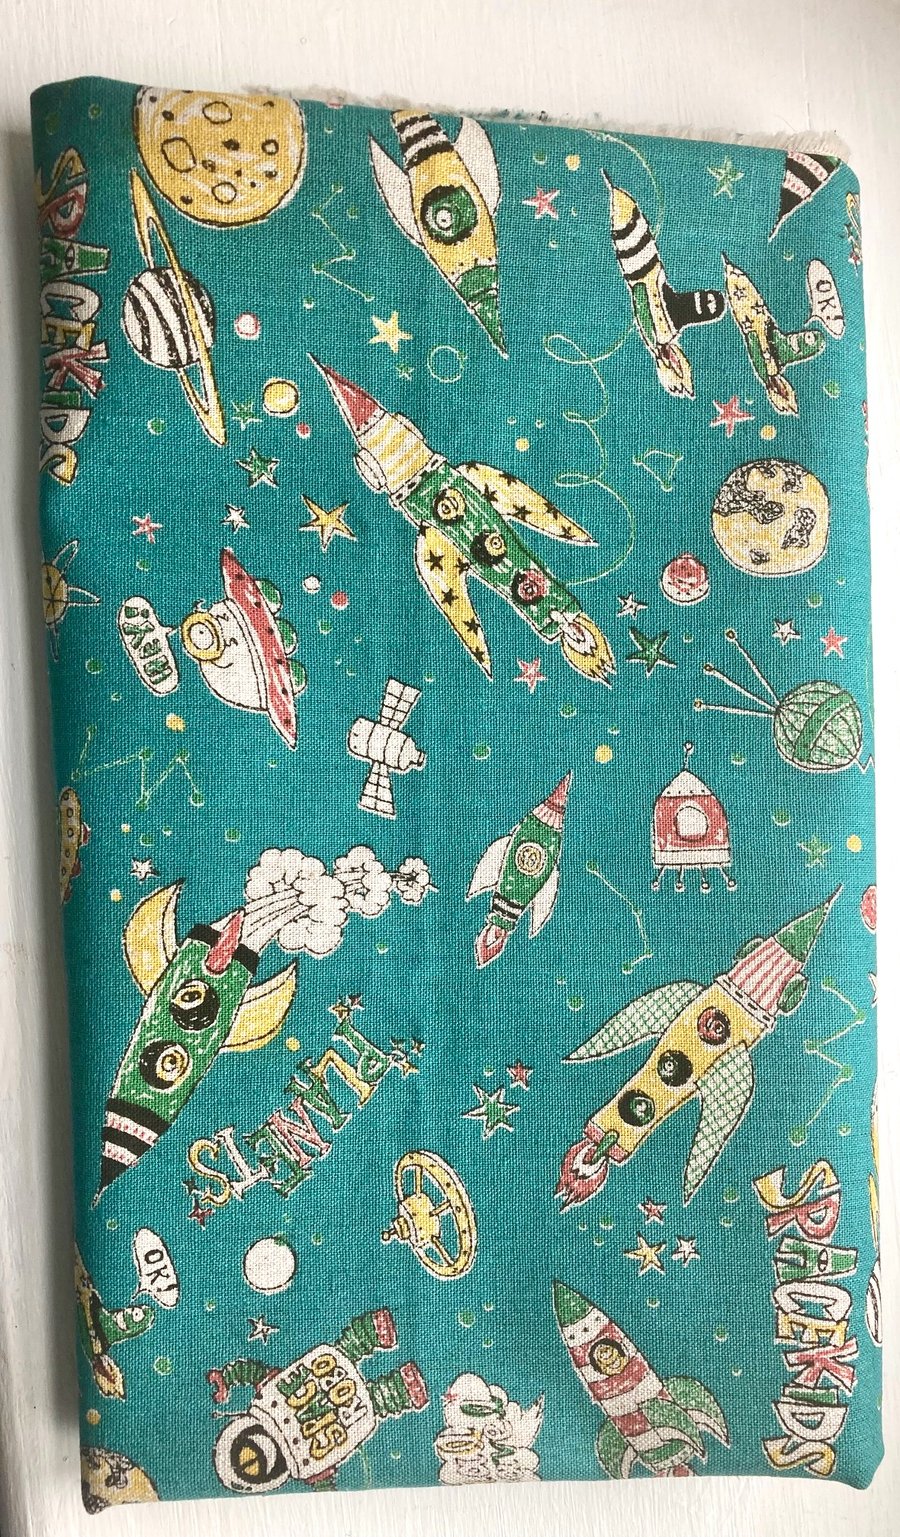 Miyako Kawaguchi "Spacekids' Fabric - 1m